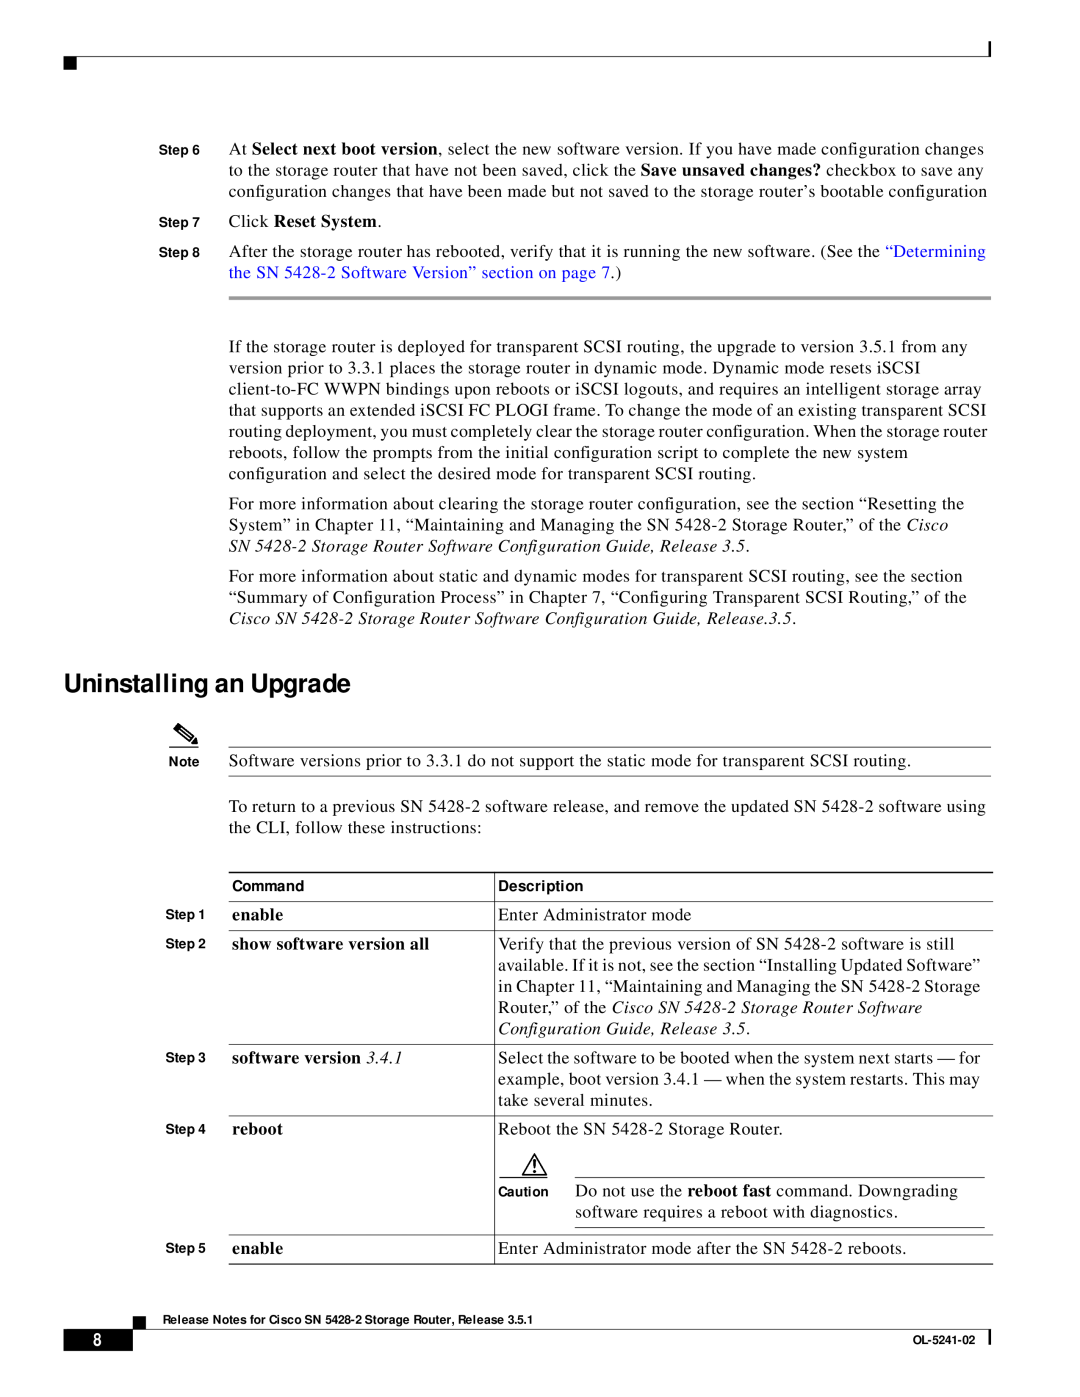 Cisco Systems SN 5428-2 manual Uninstalling an Upgrade, Command, Description 